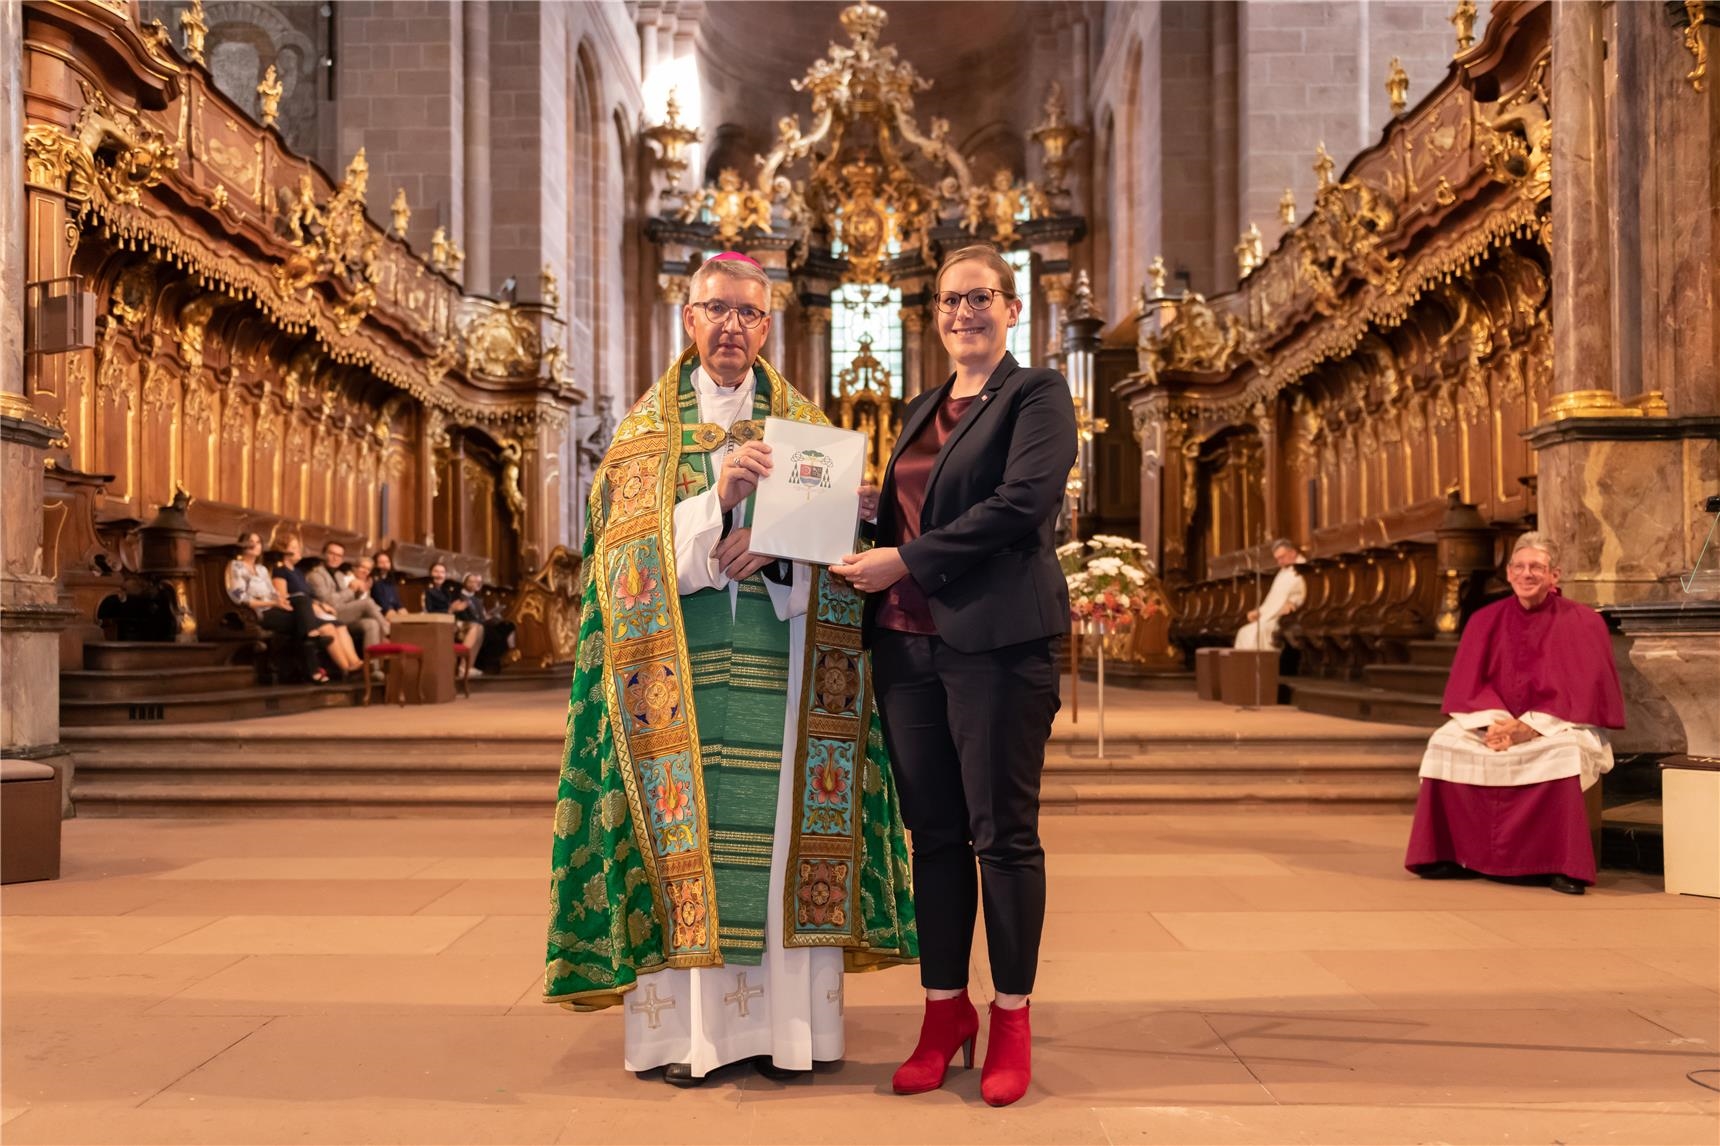 Bischof Prof. Dr. Peter Kohlgraf bei der Urkundenübergabe mit Caritasdirektorin Ulrike Kunz im Dom zu Worms (© Caritasverband Worms e. V., Horst Stange)